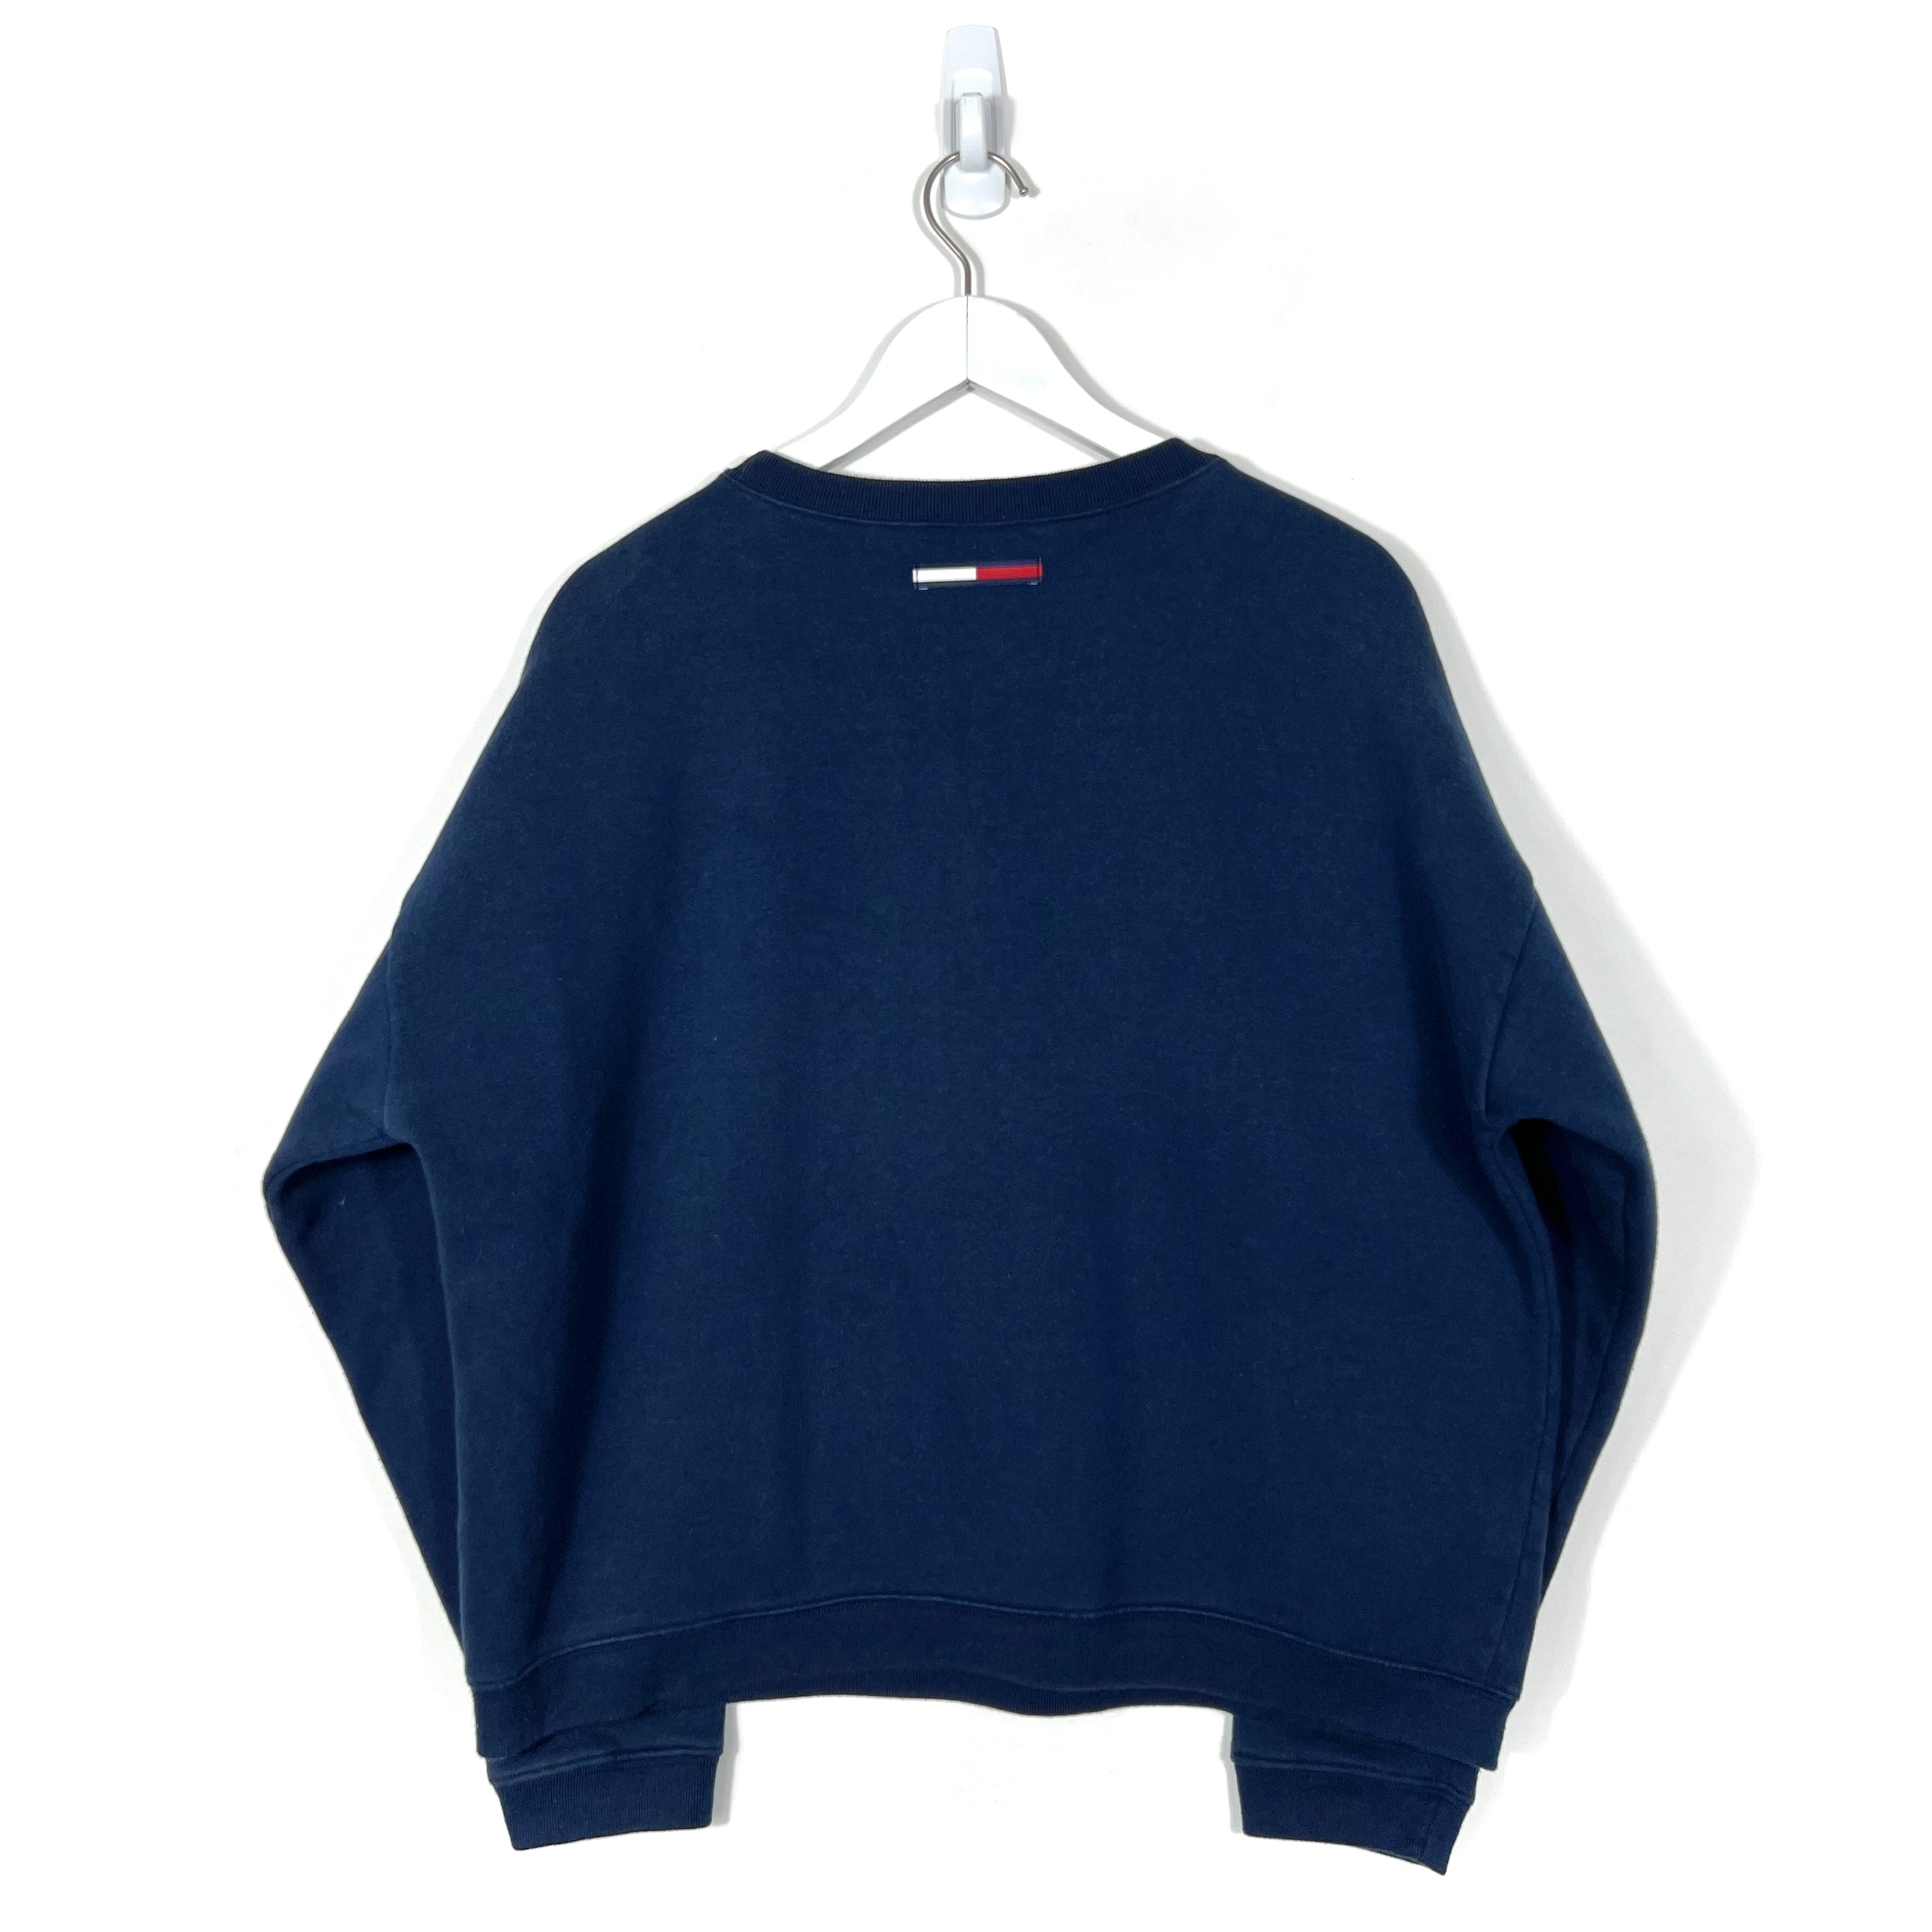 Vintage Tommy Hilfiger Sweatshirt - Women's Medium